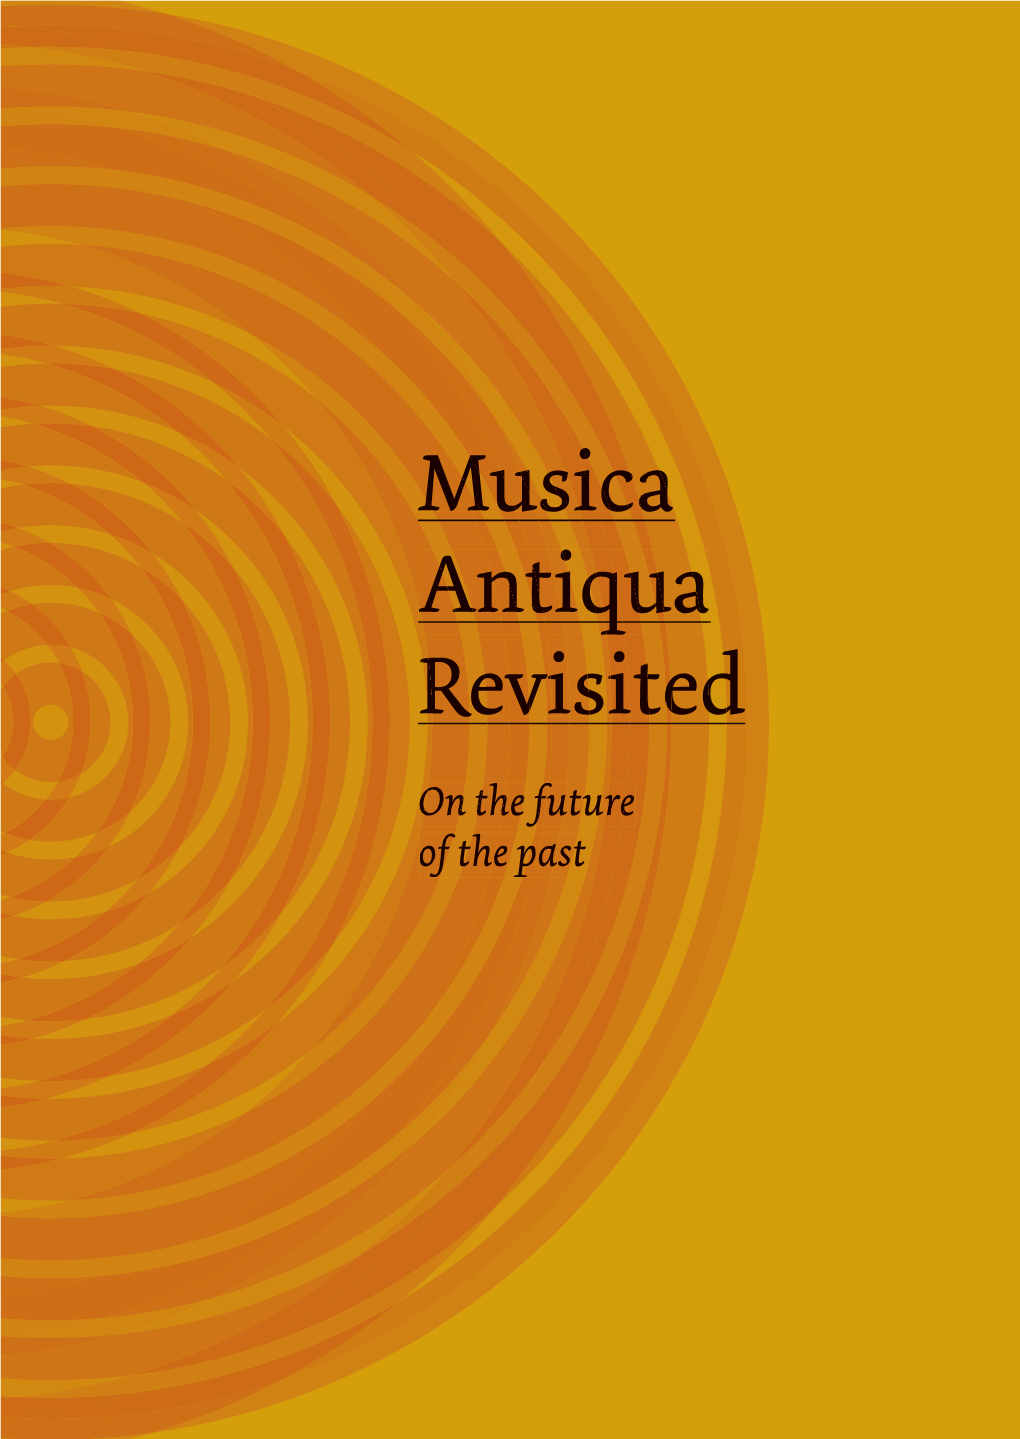 Musica Antiqua Revisited